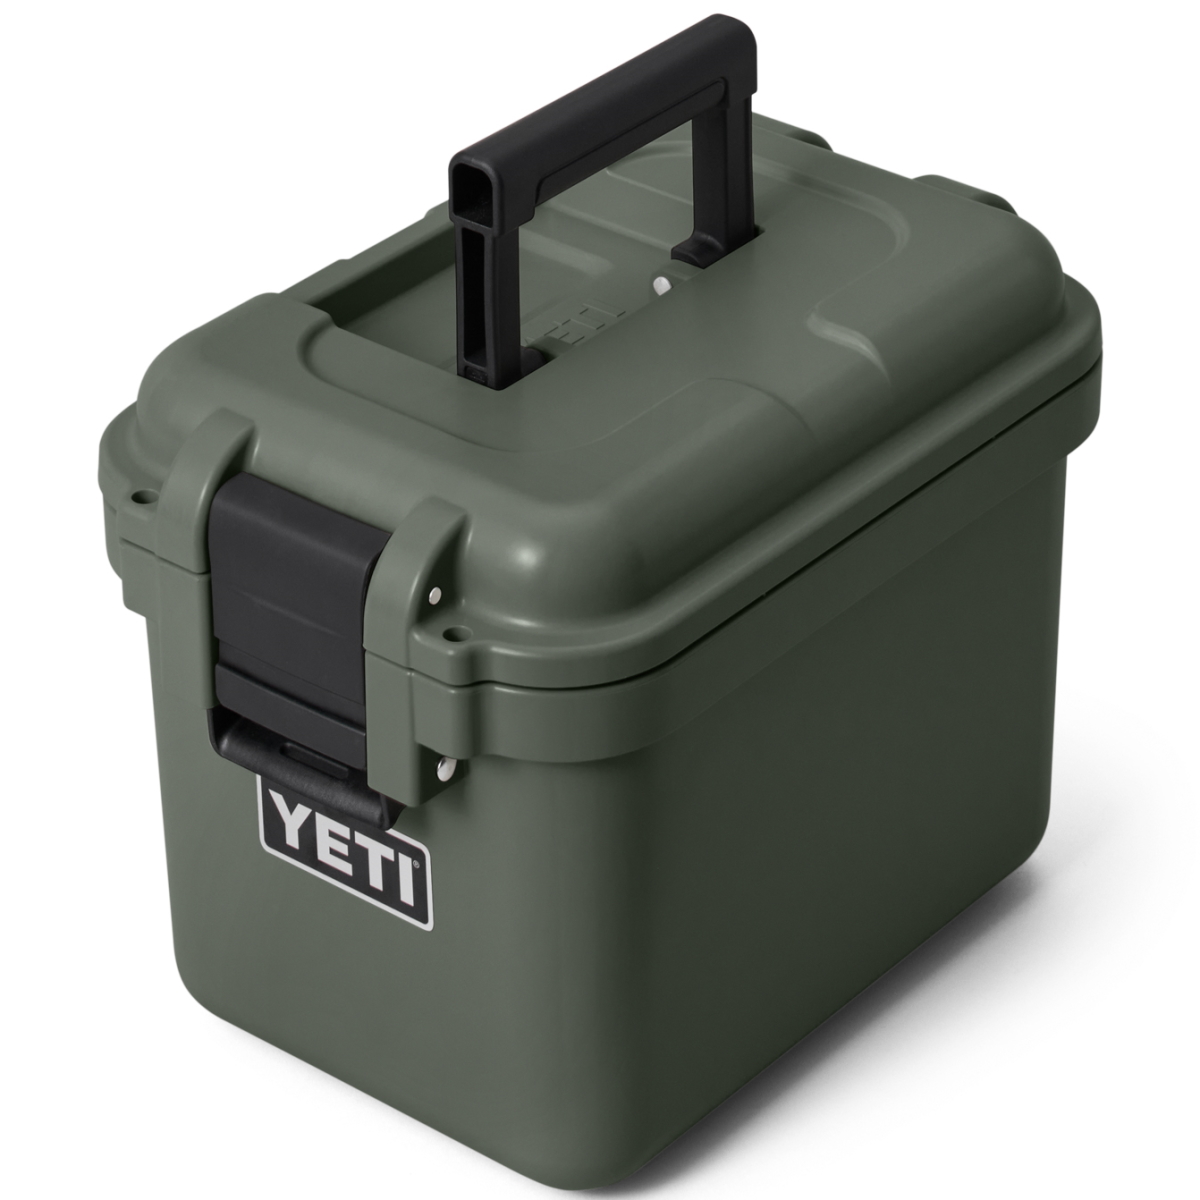 Yeti - LoadOut® GoBox 15 Gear Case - Heat & Grill